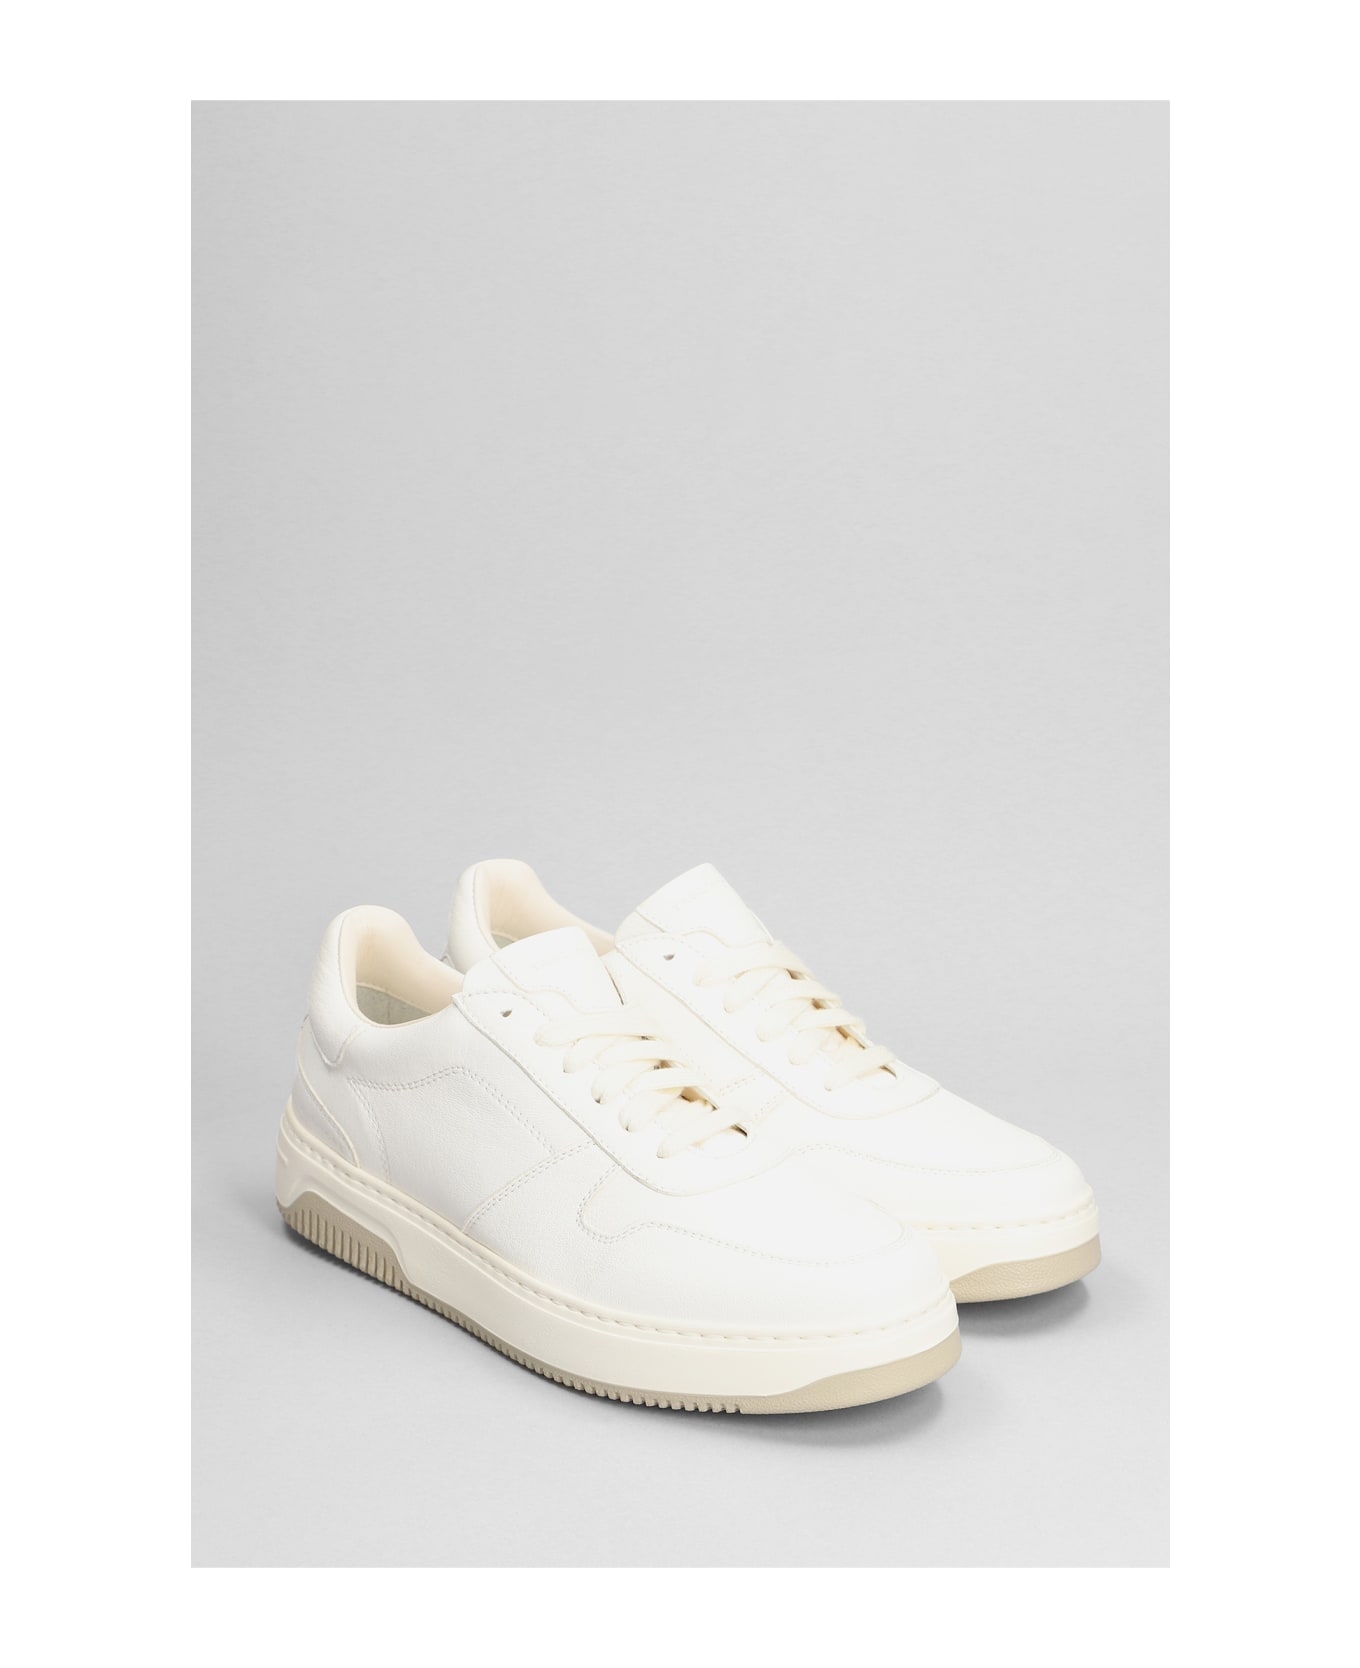 Tagliatore 0205 Sneakers In White Leather - white